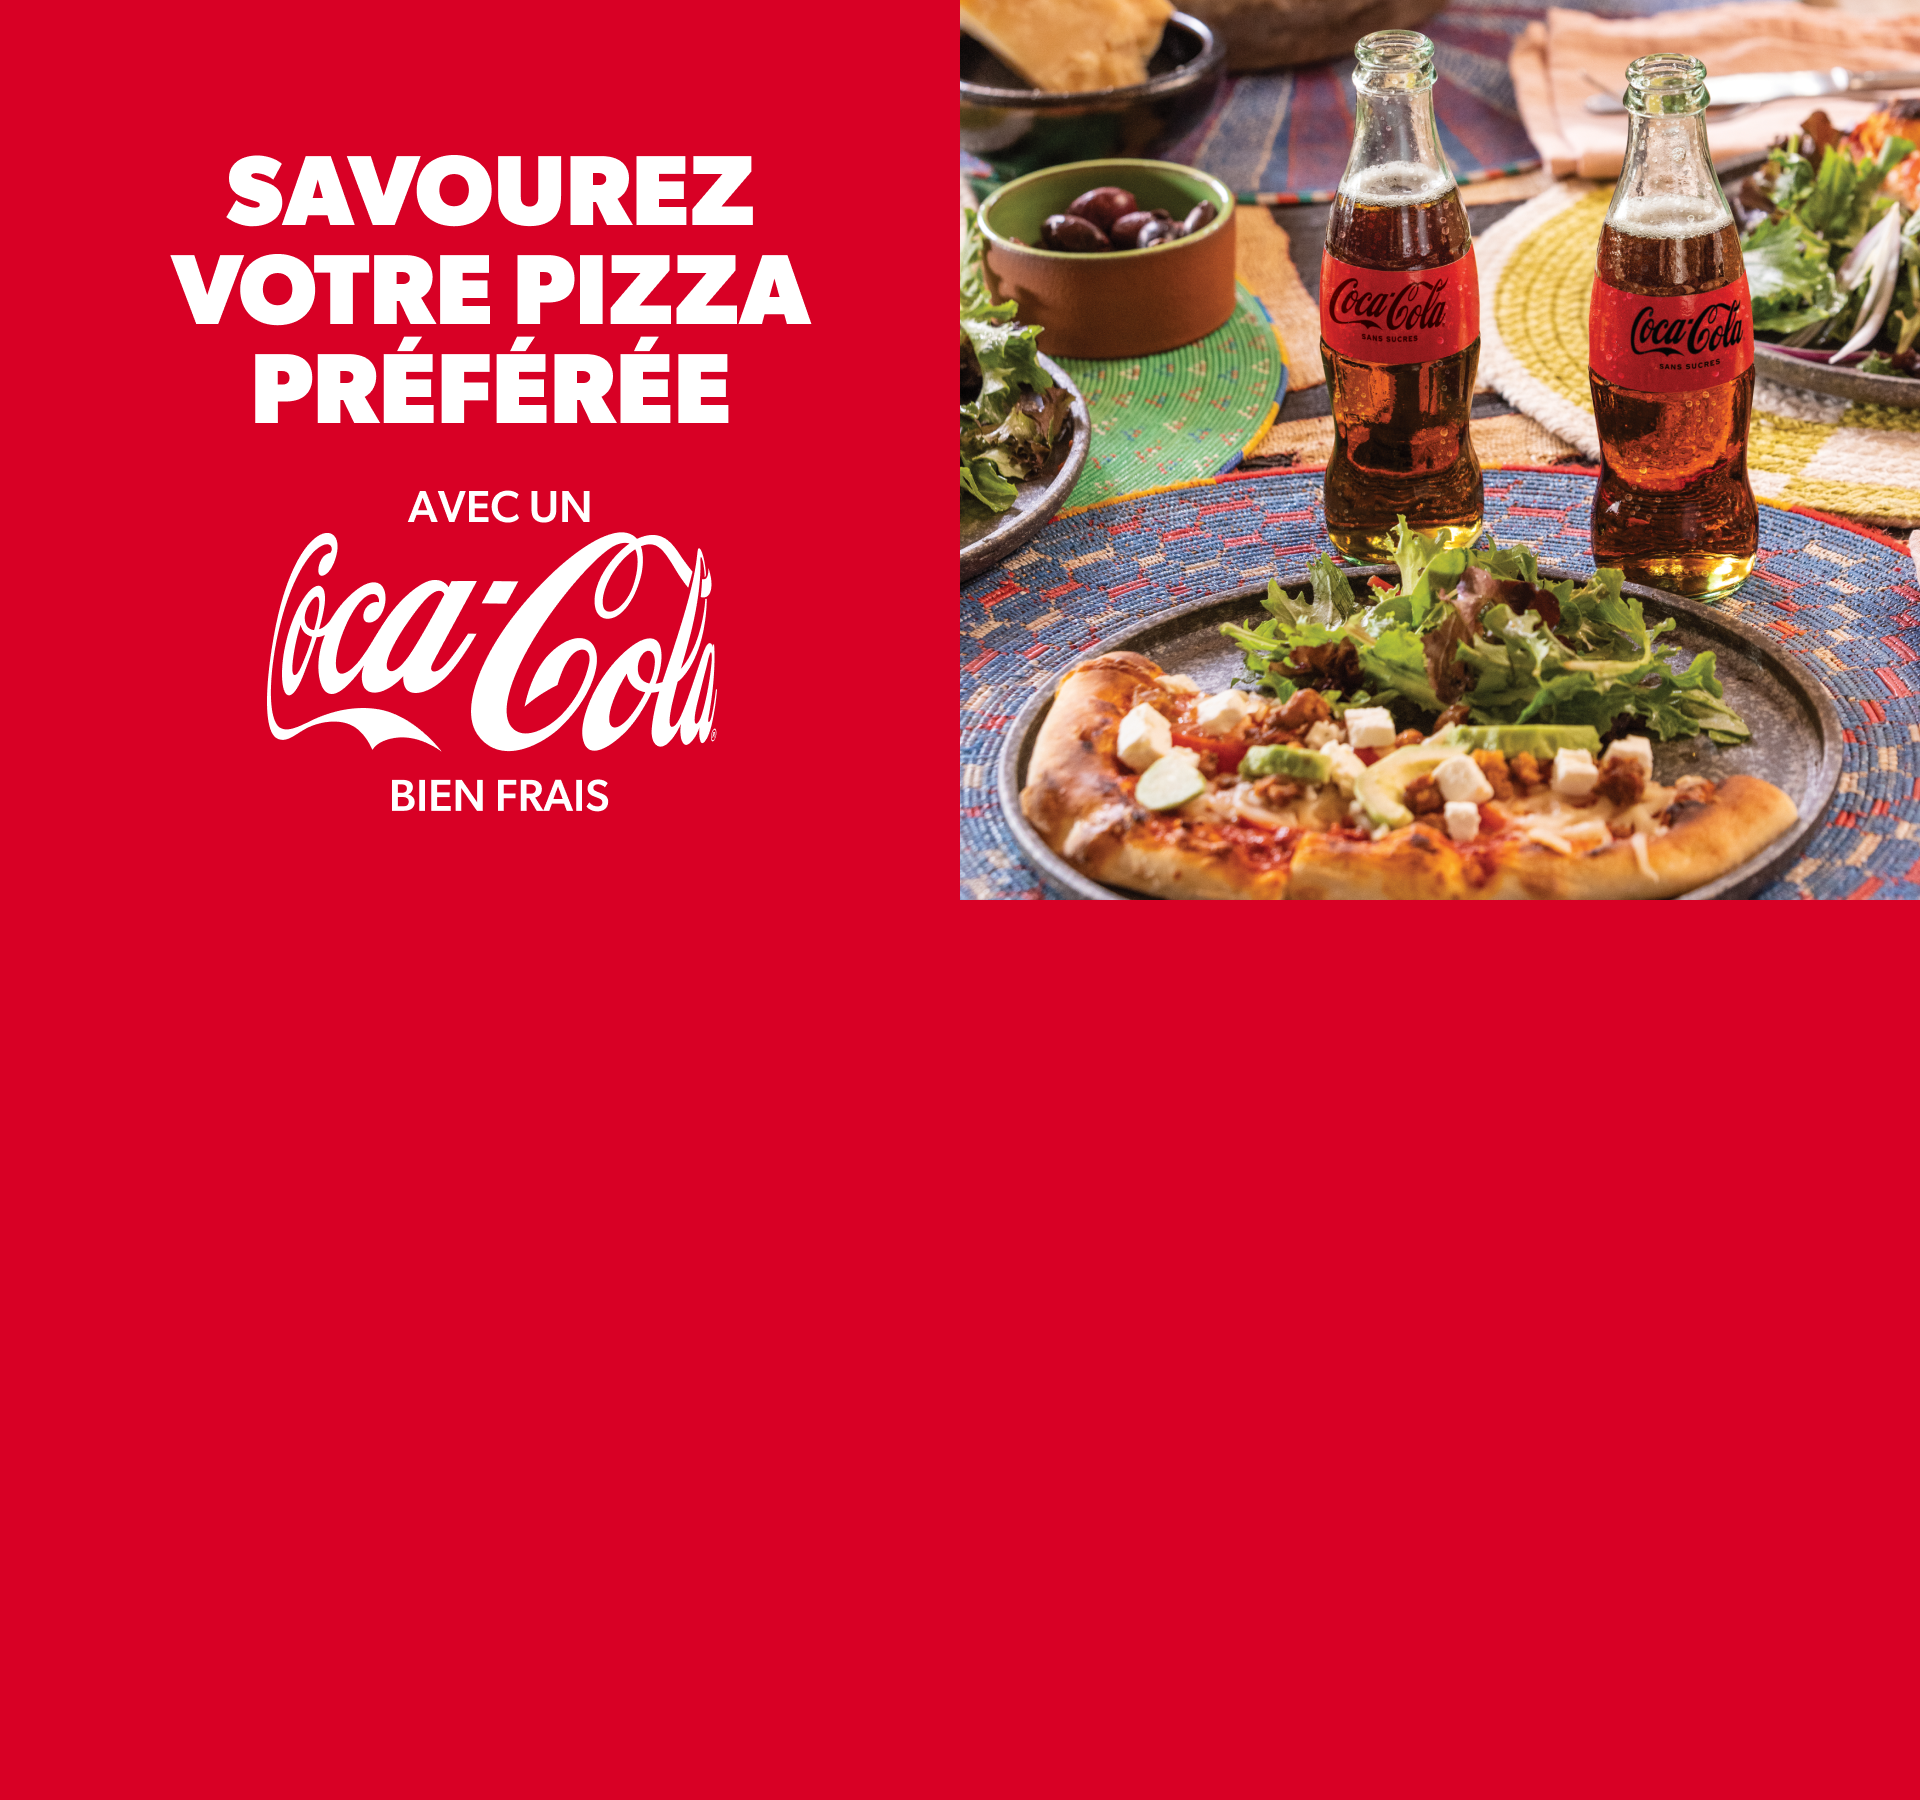 Savourez votre pizza préférée avec un Coca Cola bien frais!